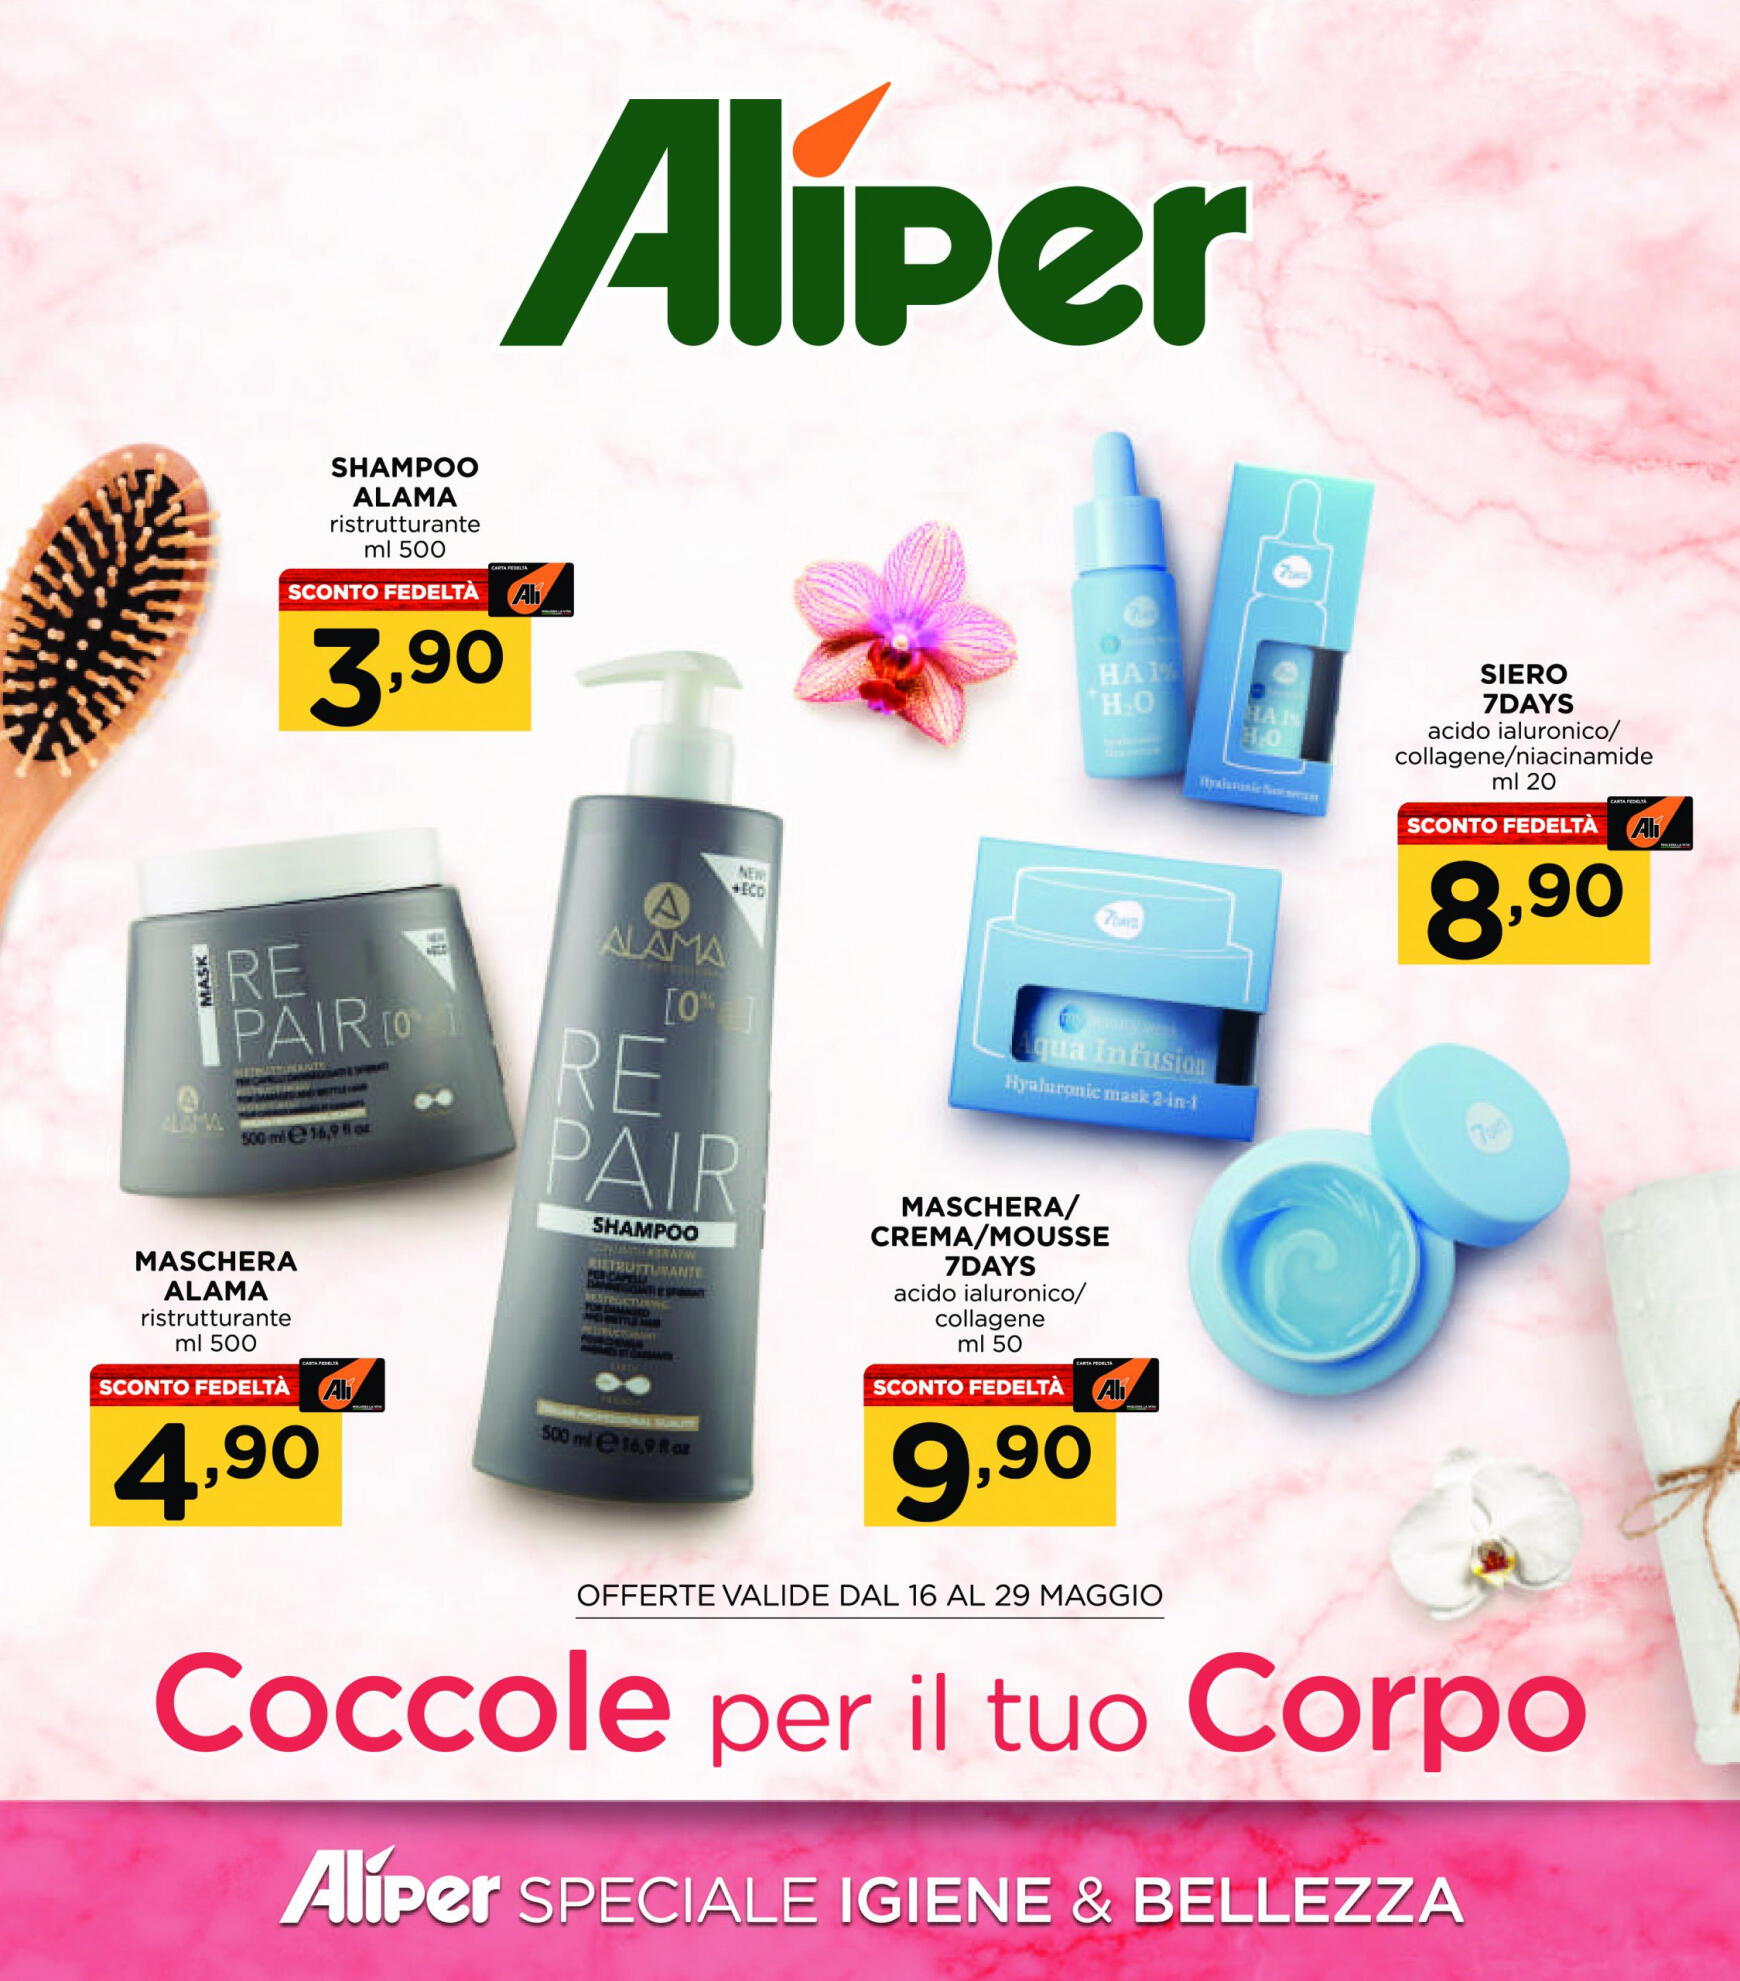 ali-aliper - Nuovo volantino Aliper - Speciale igiene e bellezza 16.05. - 29.05.